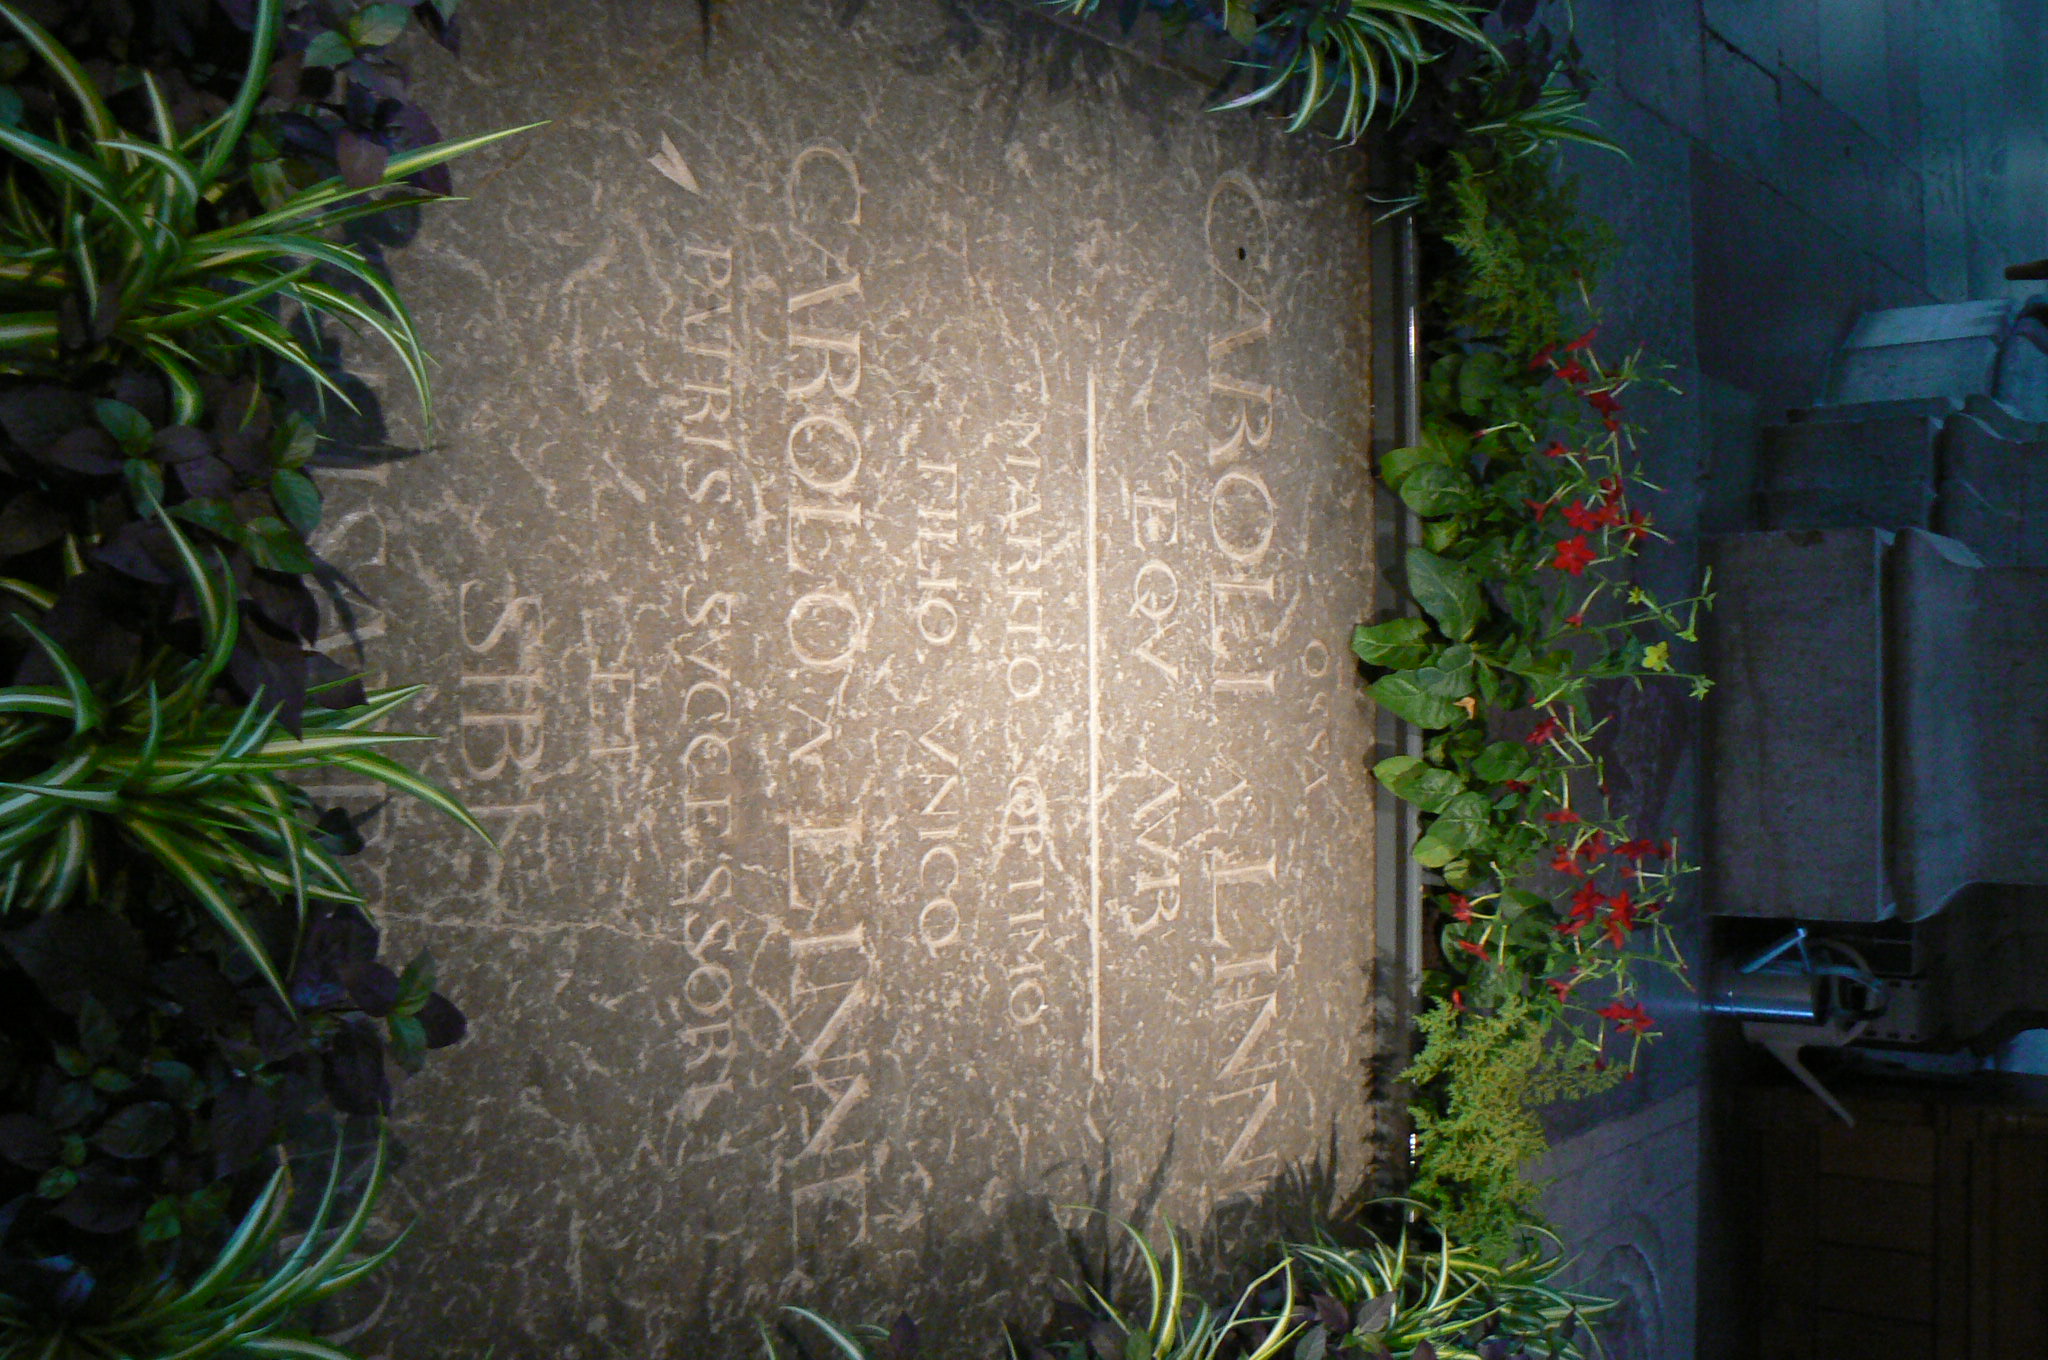 120.Uppsala-pohřben Carl Linné v katedrále.jpg